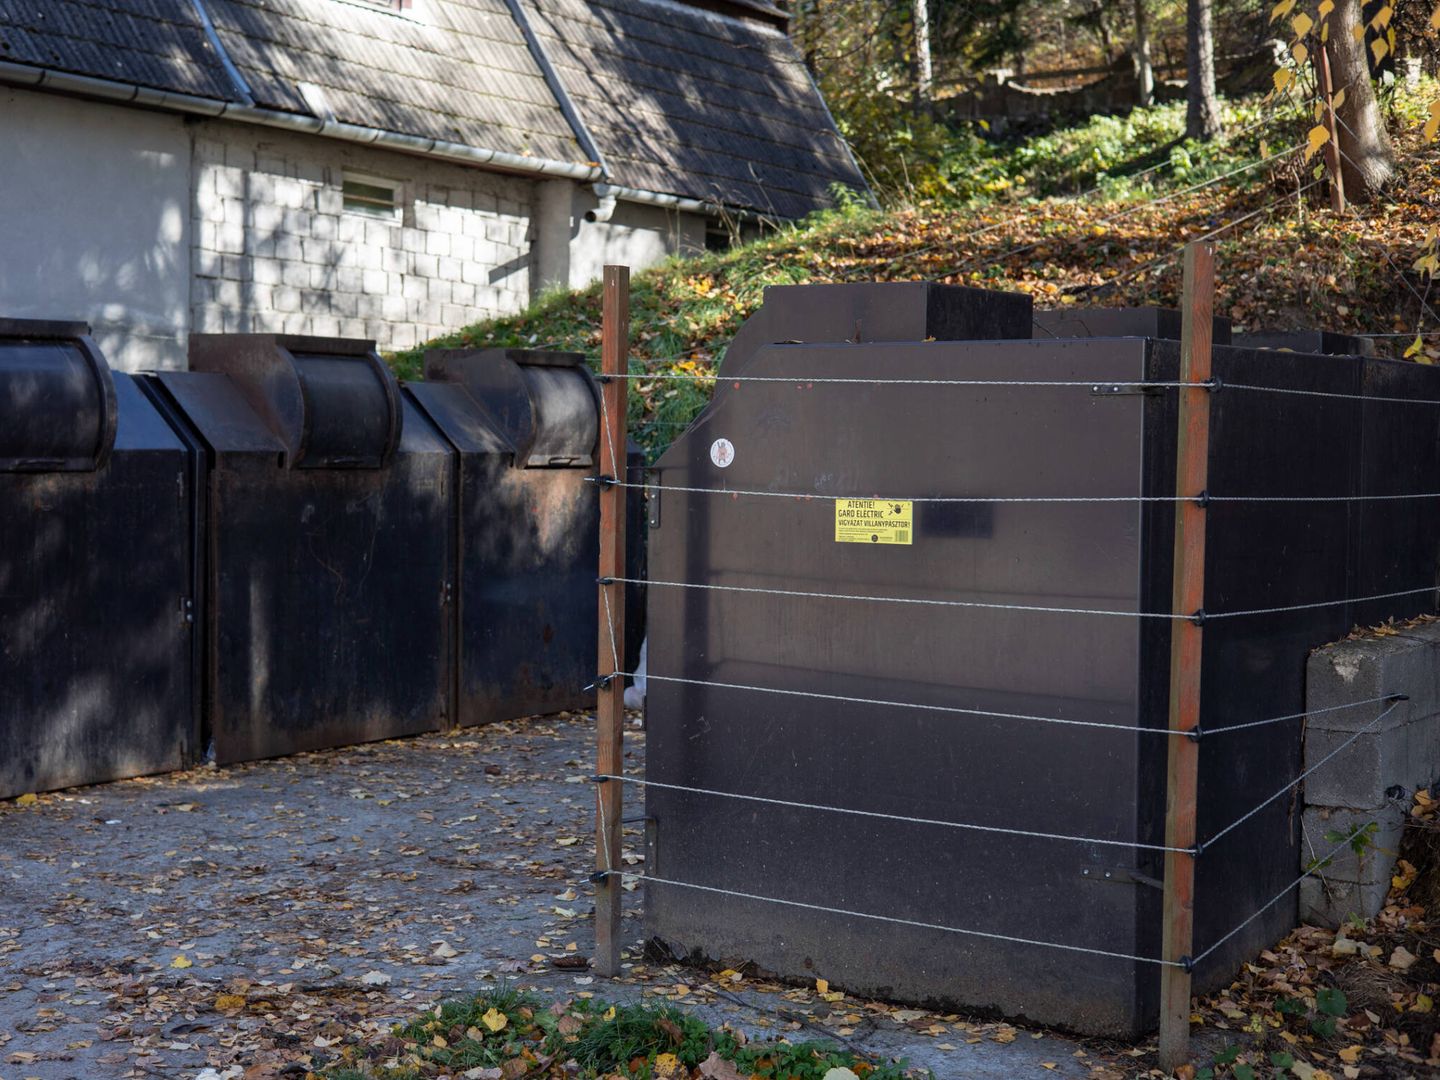 Contenedores de basura con vallas electrificadas. (LGA)